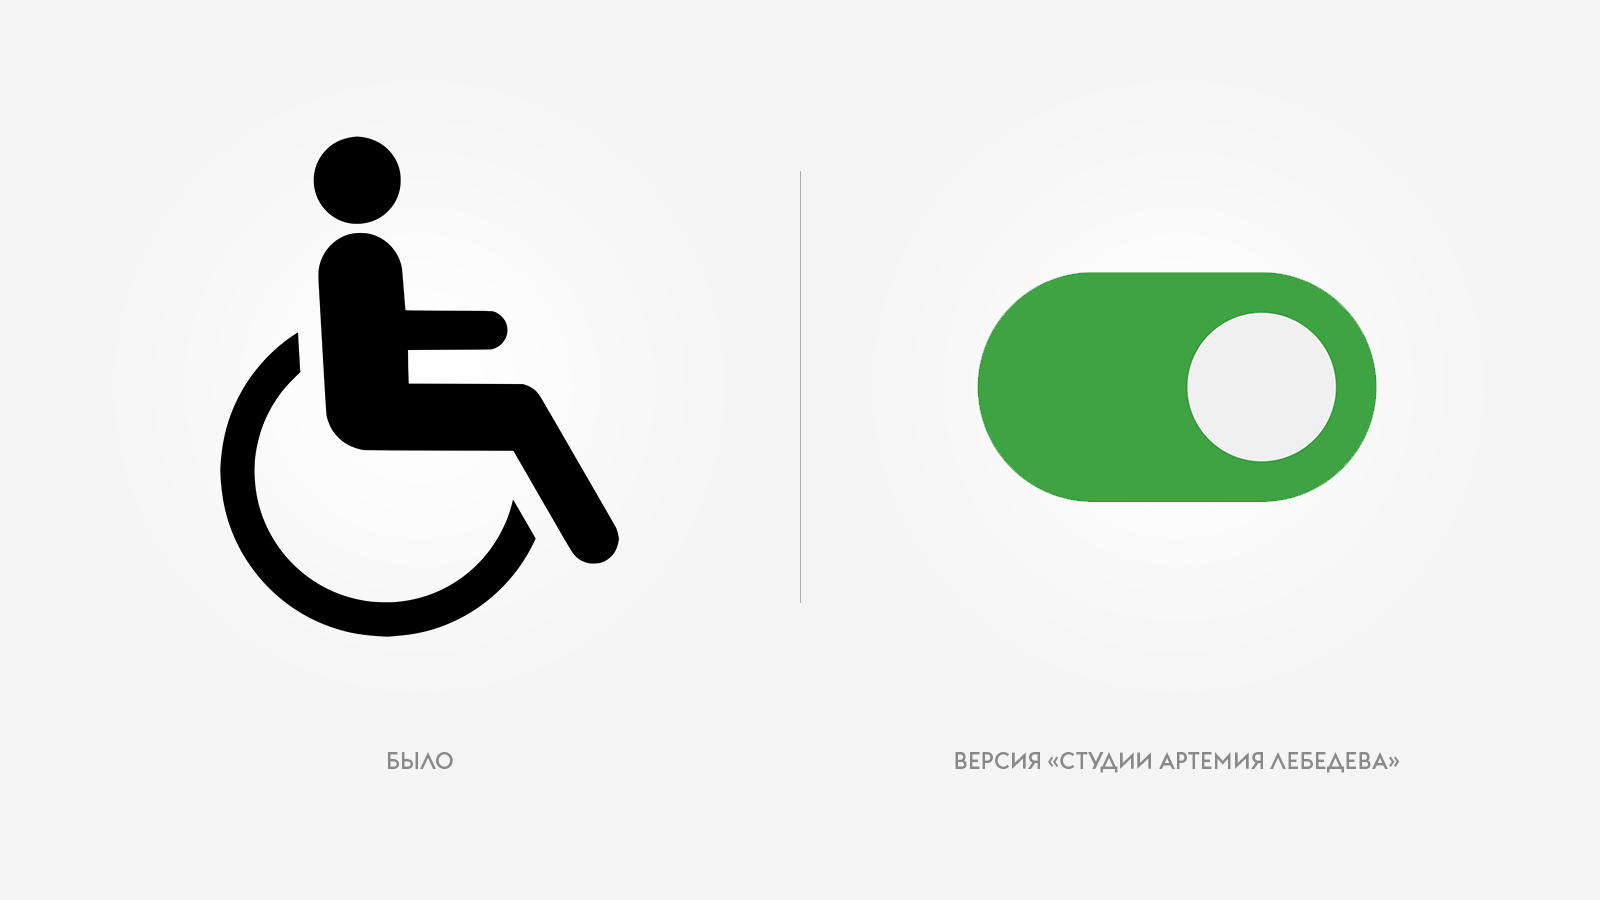 Значки артемия лебедева. Знаки доступности для инвалидов. Международный знак инвалида. Международный символ доступной среды. Студия Лебедева.